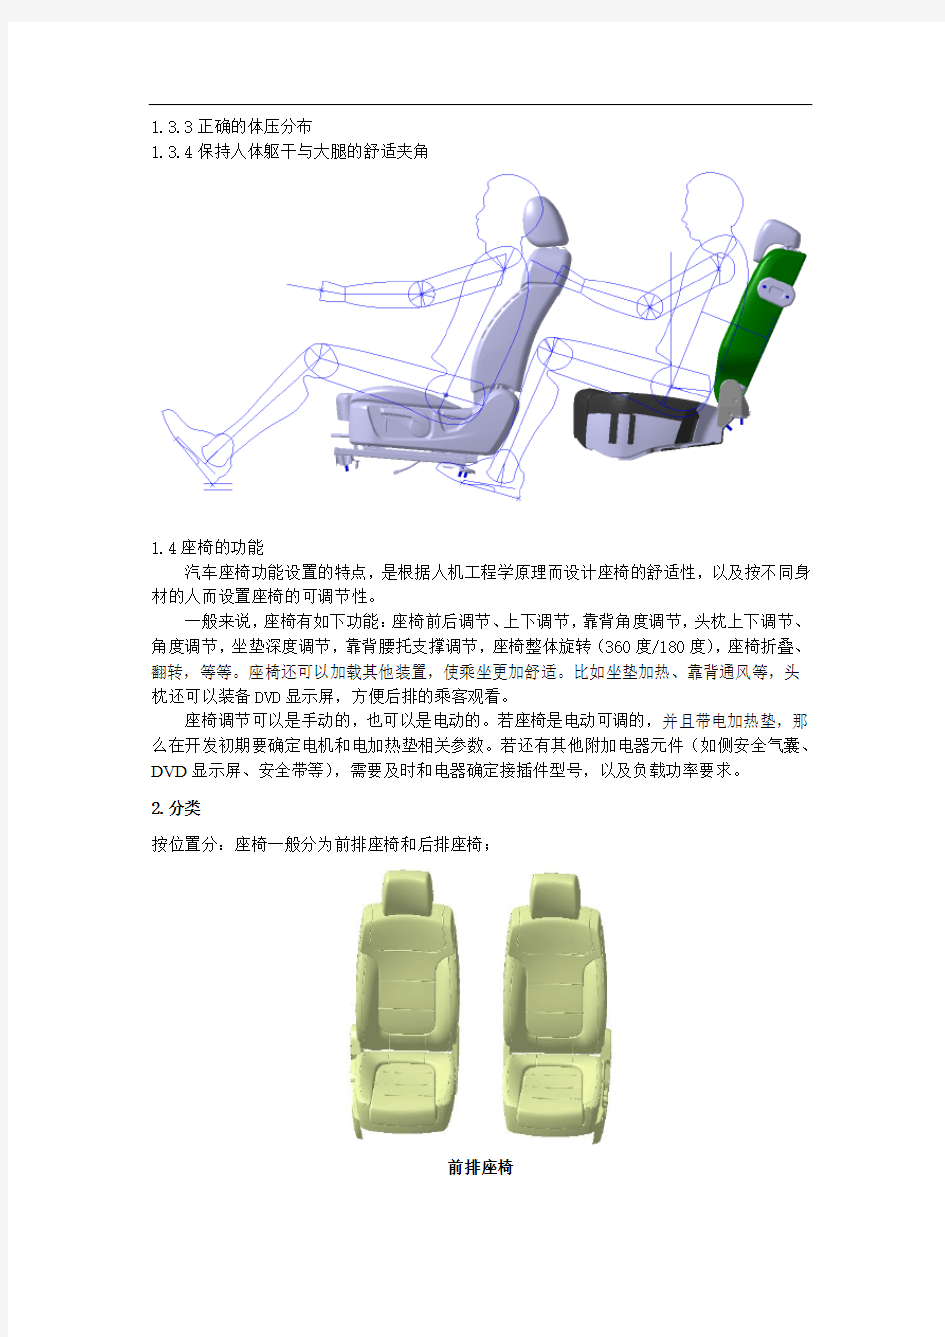 (仅供参考)汽车座椅系统-设计指南